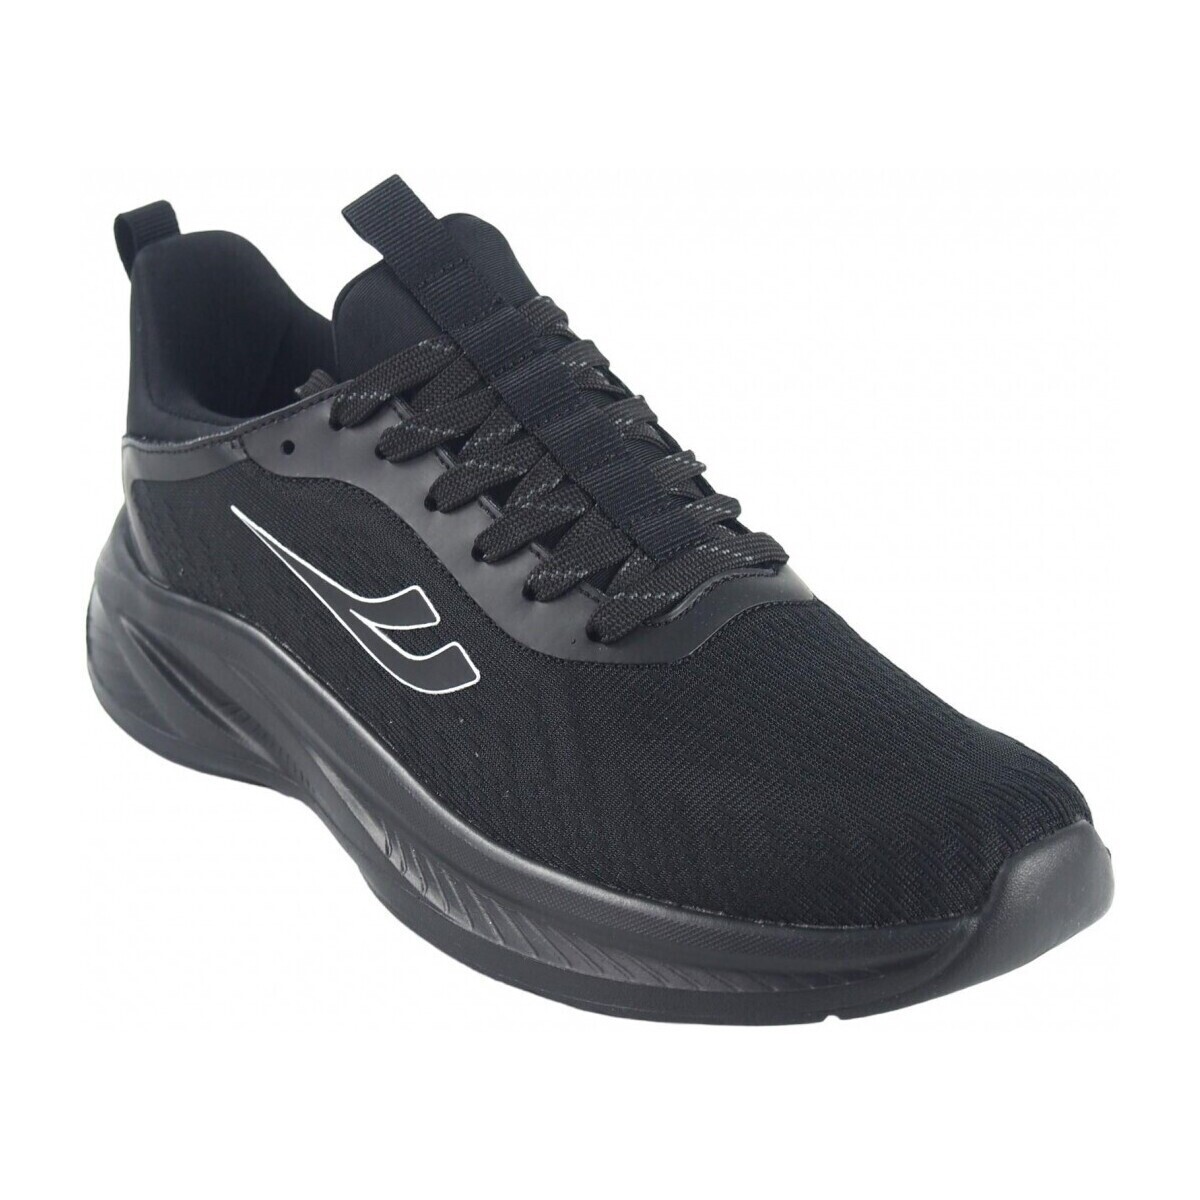 Sapatos Homem Multi-desportos Bienve Cavalheiro esportivo  Saturn 2301 preto Preto